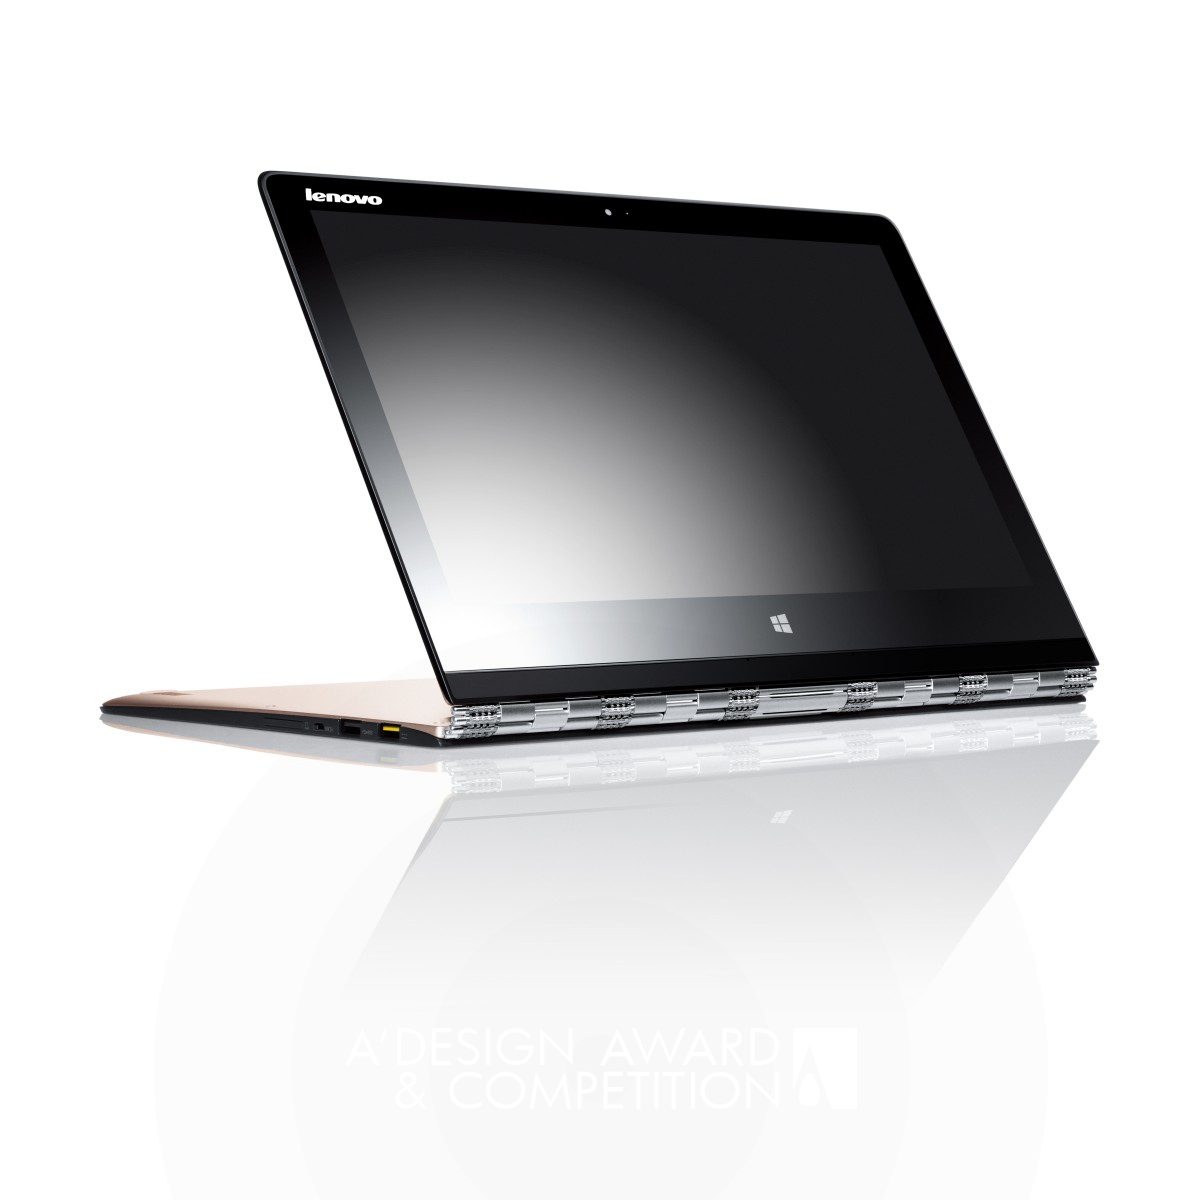 Yoga 3 Pro laptop by Johnson Li